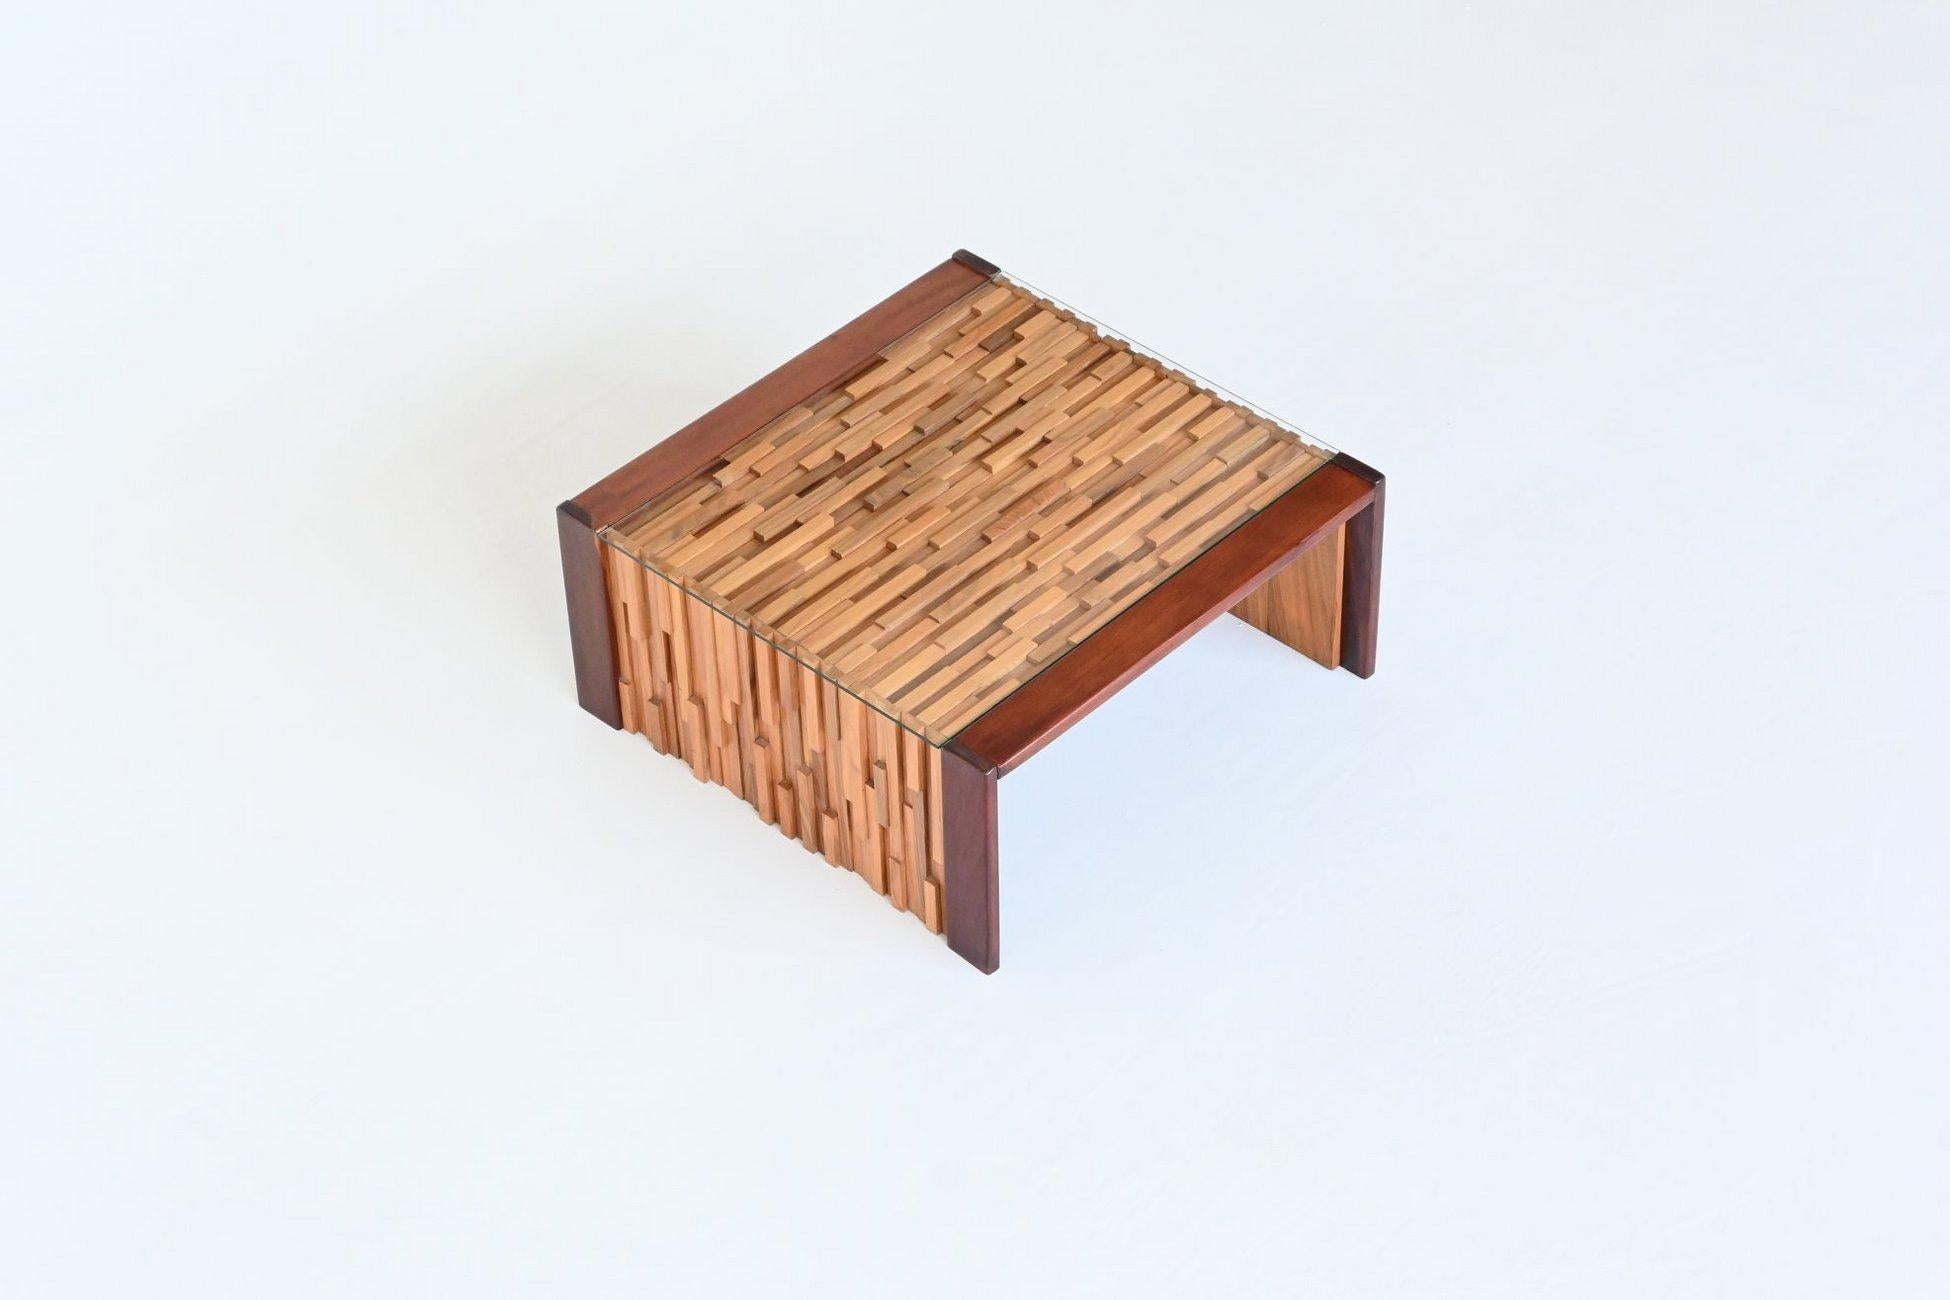 Magnifique table basse sculpturale conçue et fabriquée par Percival Lafer, Brésil 1960. Cette pièce étonnante est fabriquée à partir de différents bois tropicaux de haute qualité qui sont très bien travaillés en différentes couches. Les longueurs